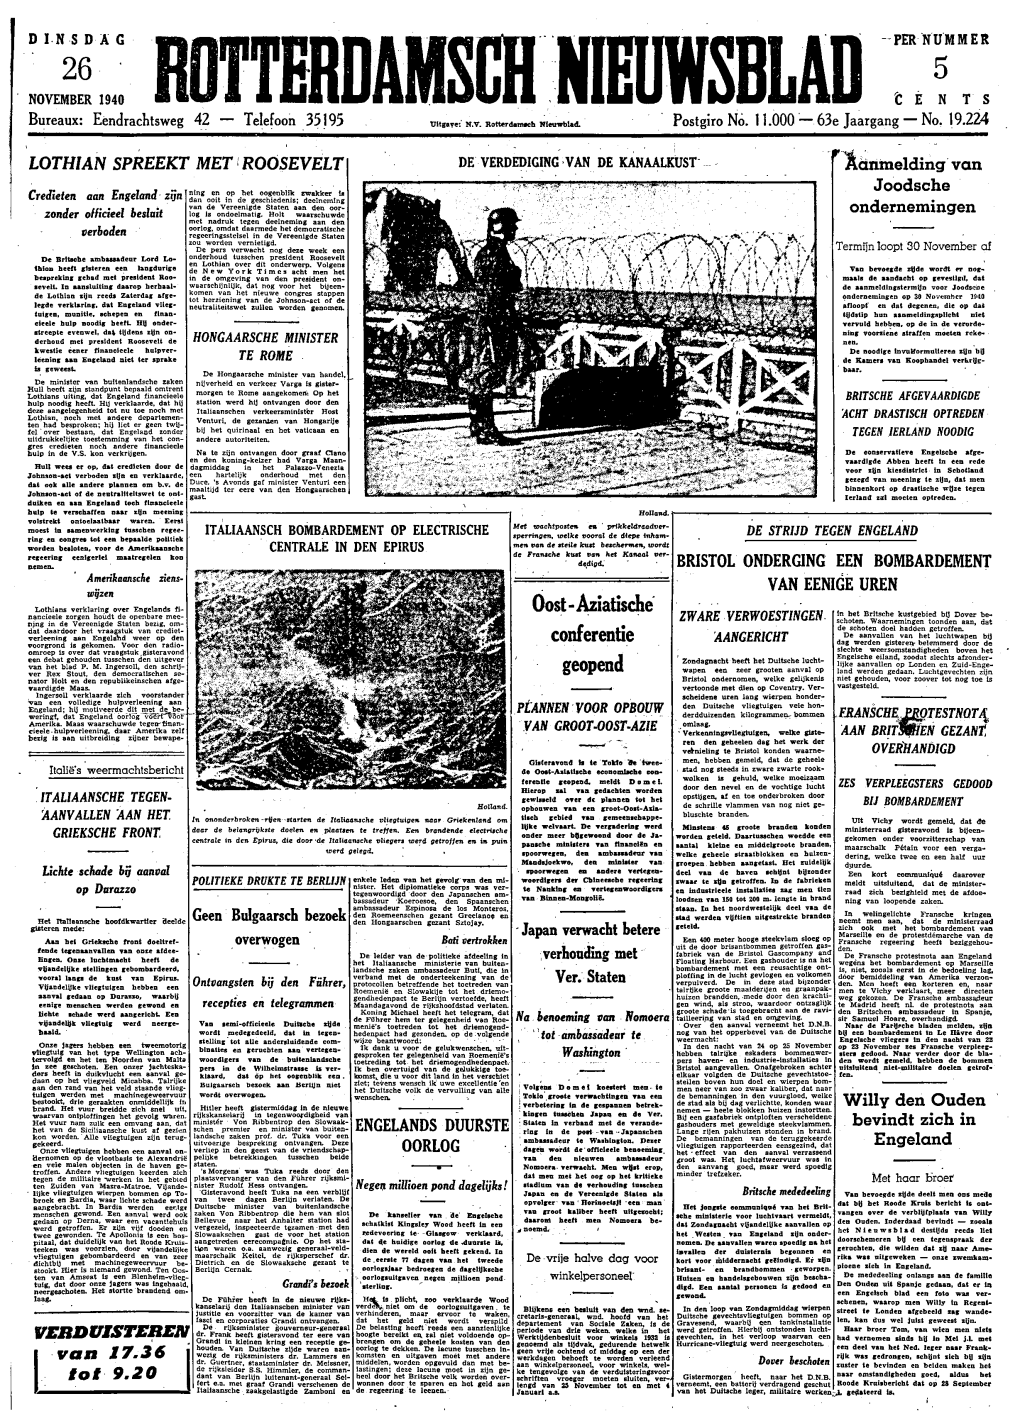 Rotterdamsch Nieuwsblad Dinsdag 26 November 1940